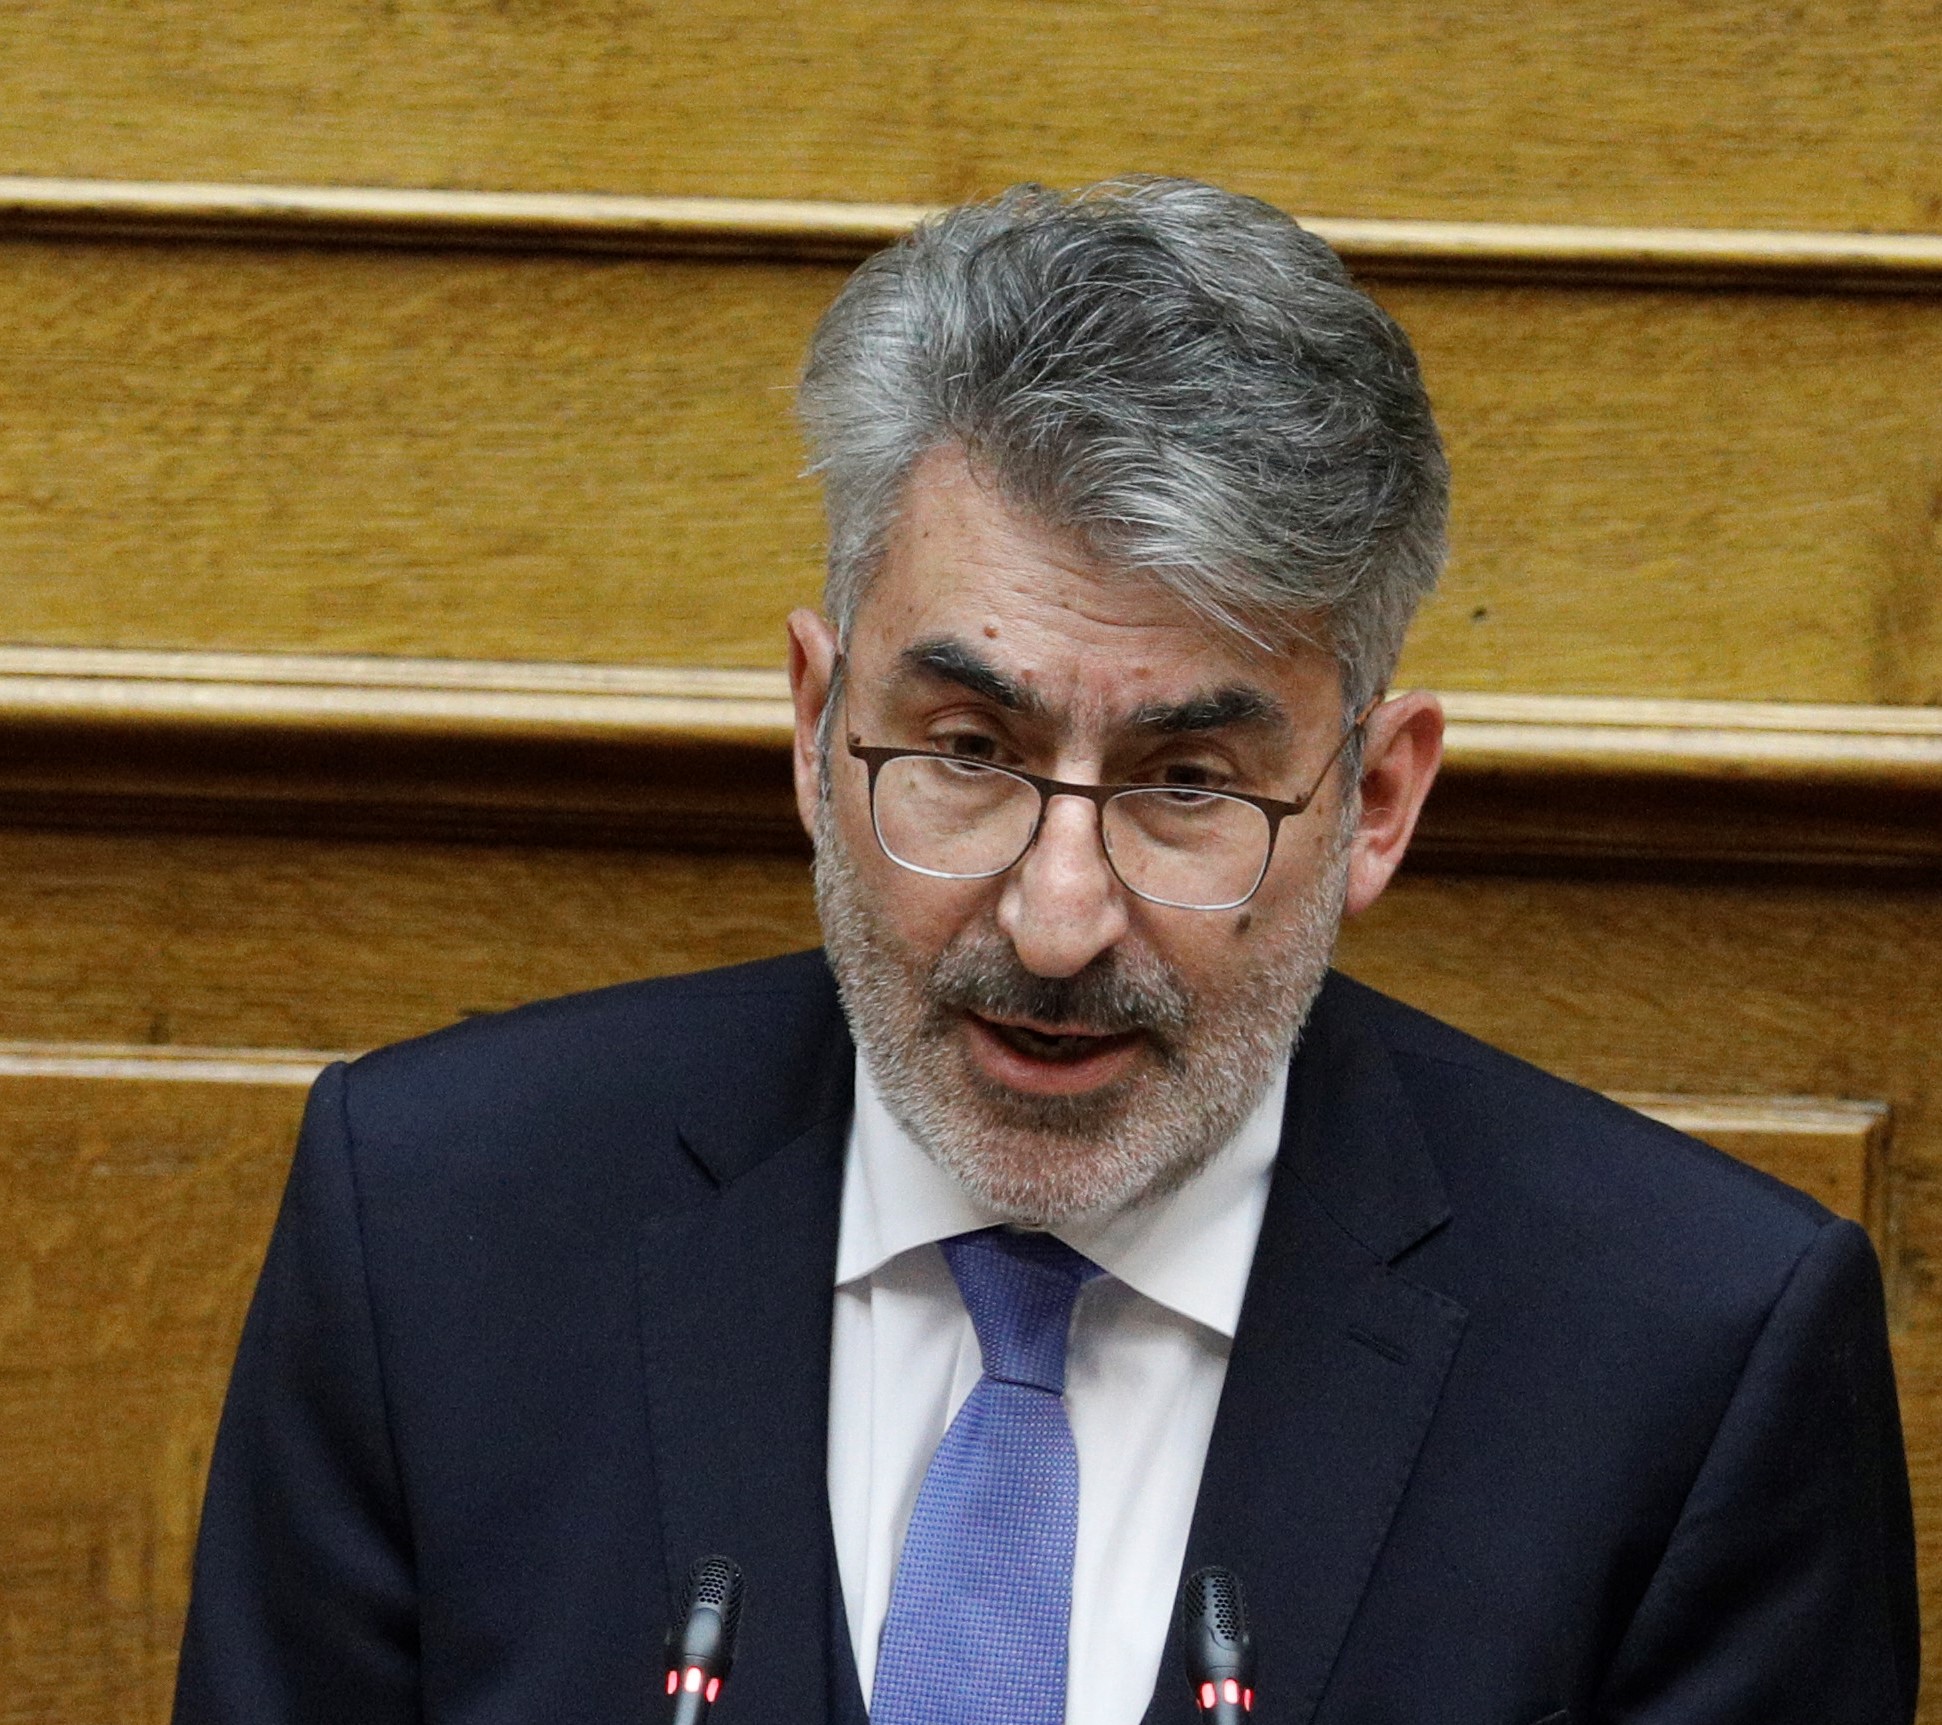 Θ. Ξανθόπουλος: Προφανής η ευθύνη της κυβέρνησης, δεν έχει σχέδιο για την αντιμετώπιση της πανδημικής κρίσης